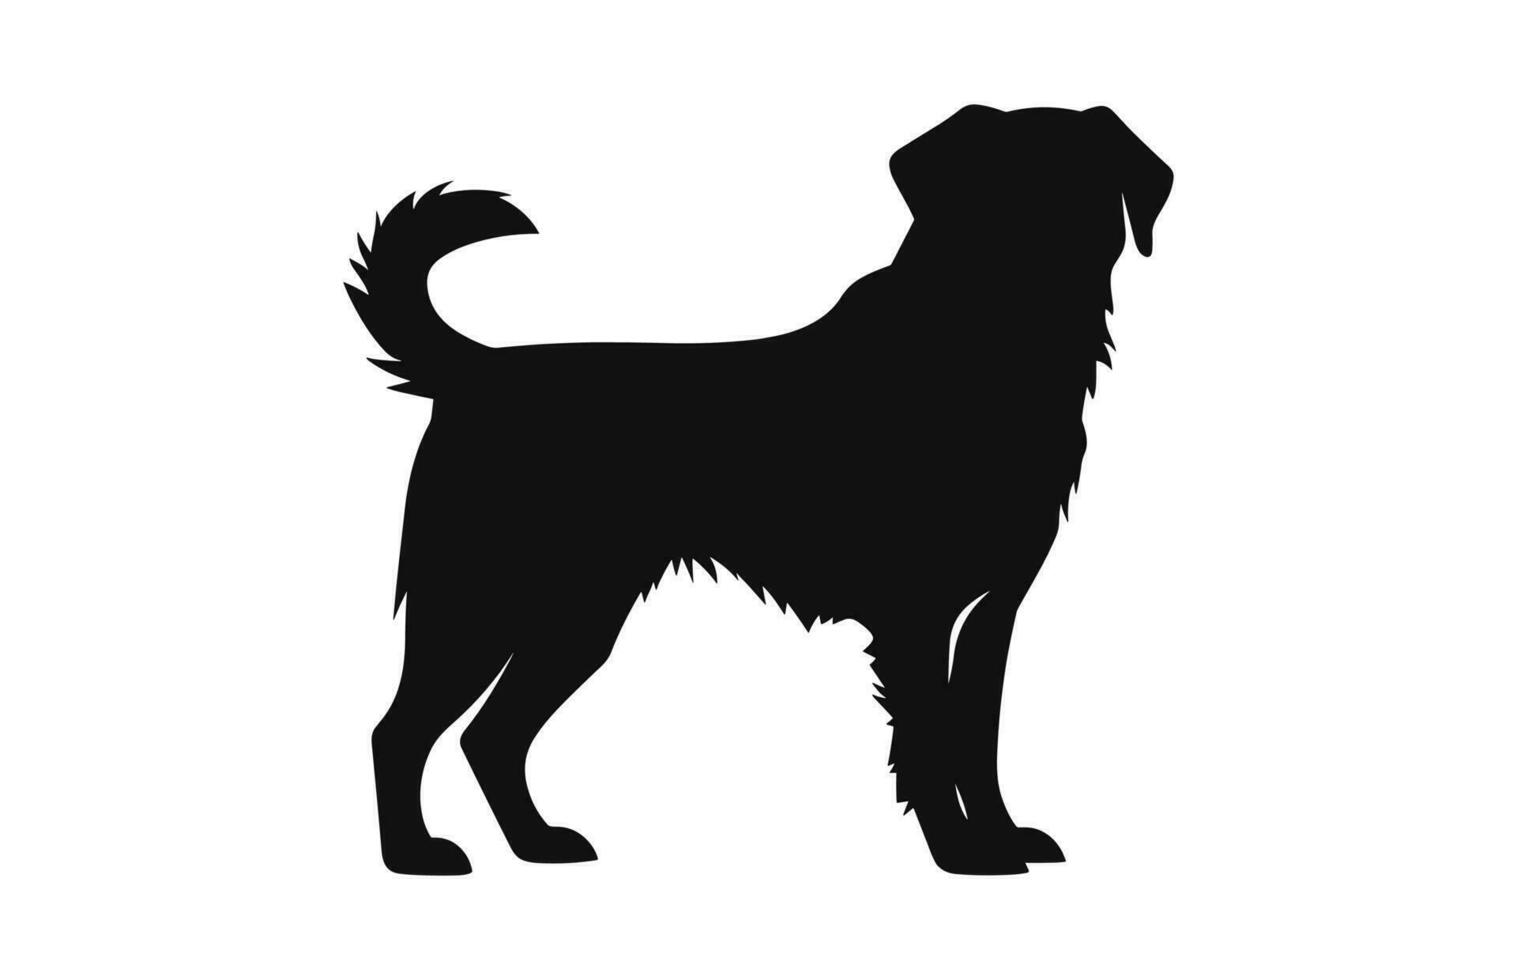 alabai Hund Vektor schwarz Silhouette isoliert auf ein Weiß Hintergrund